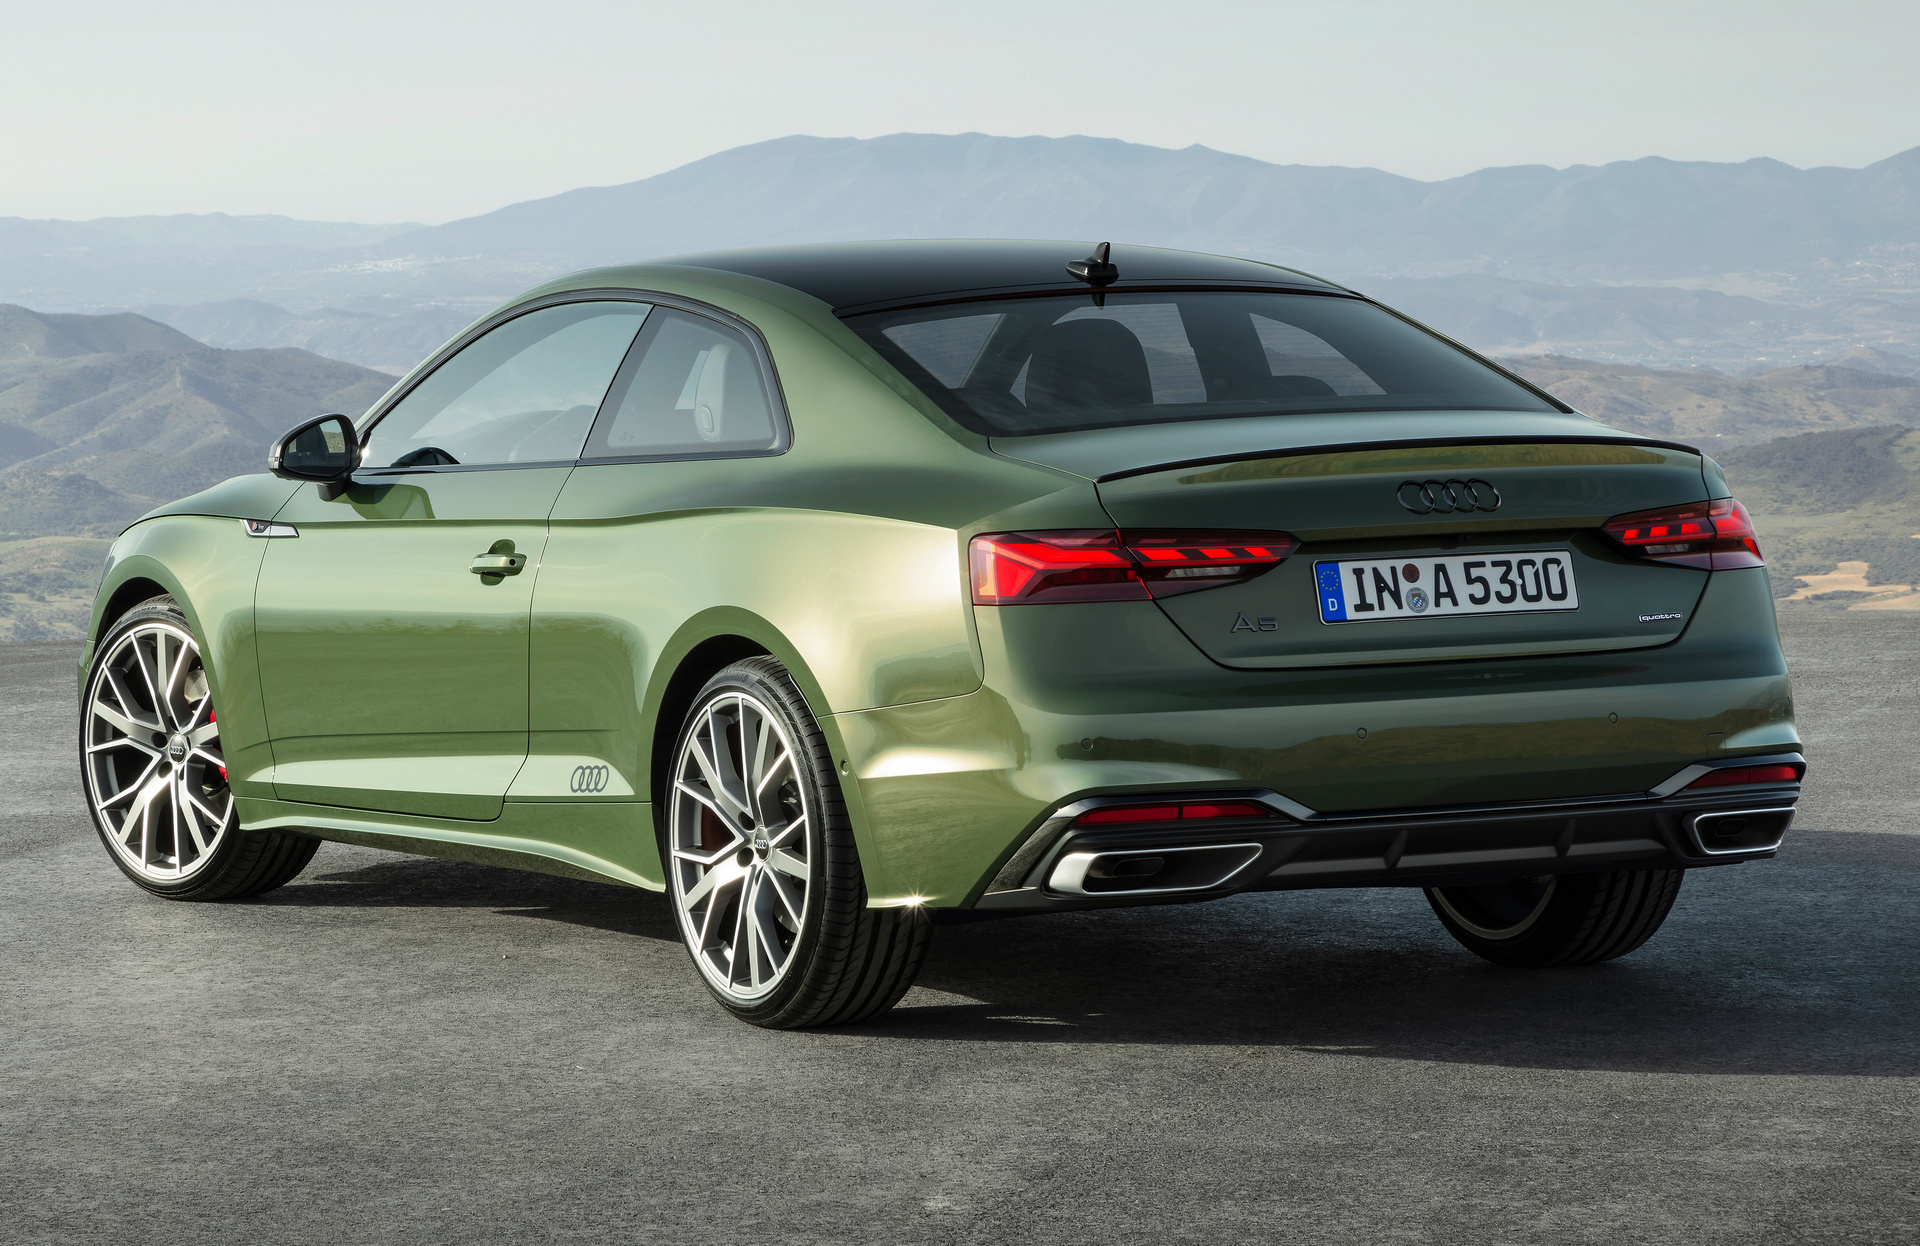 Στην Ελλάδα τα ανανεωμένα Audi A5 Sportback και A5 Coupe – Τιμές